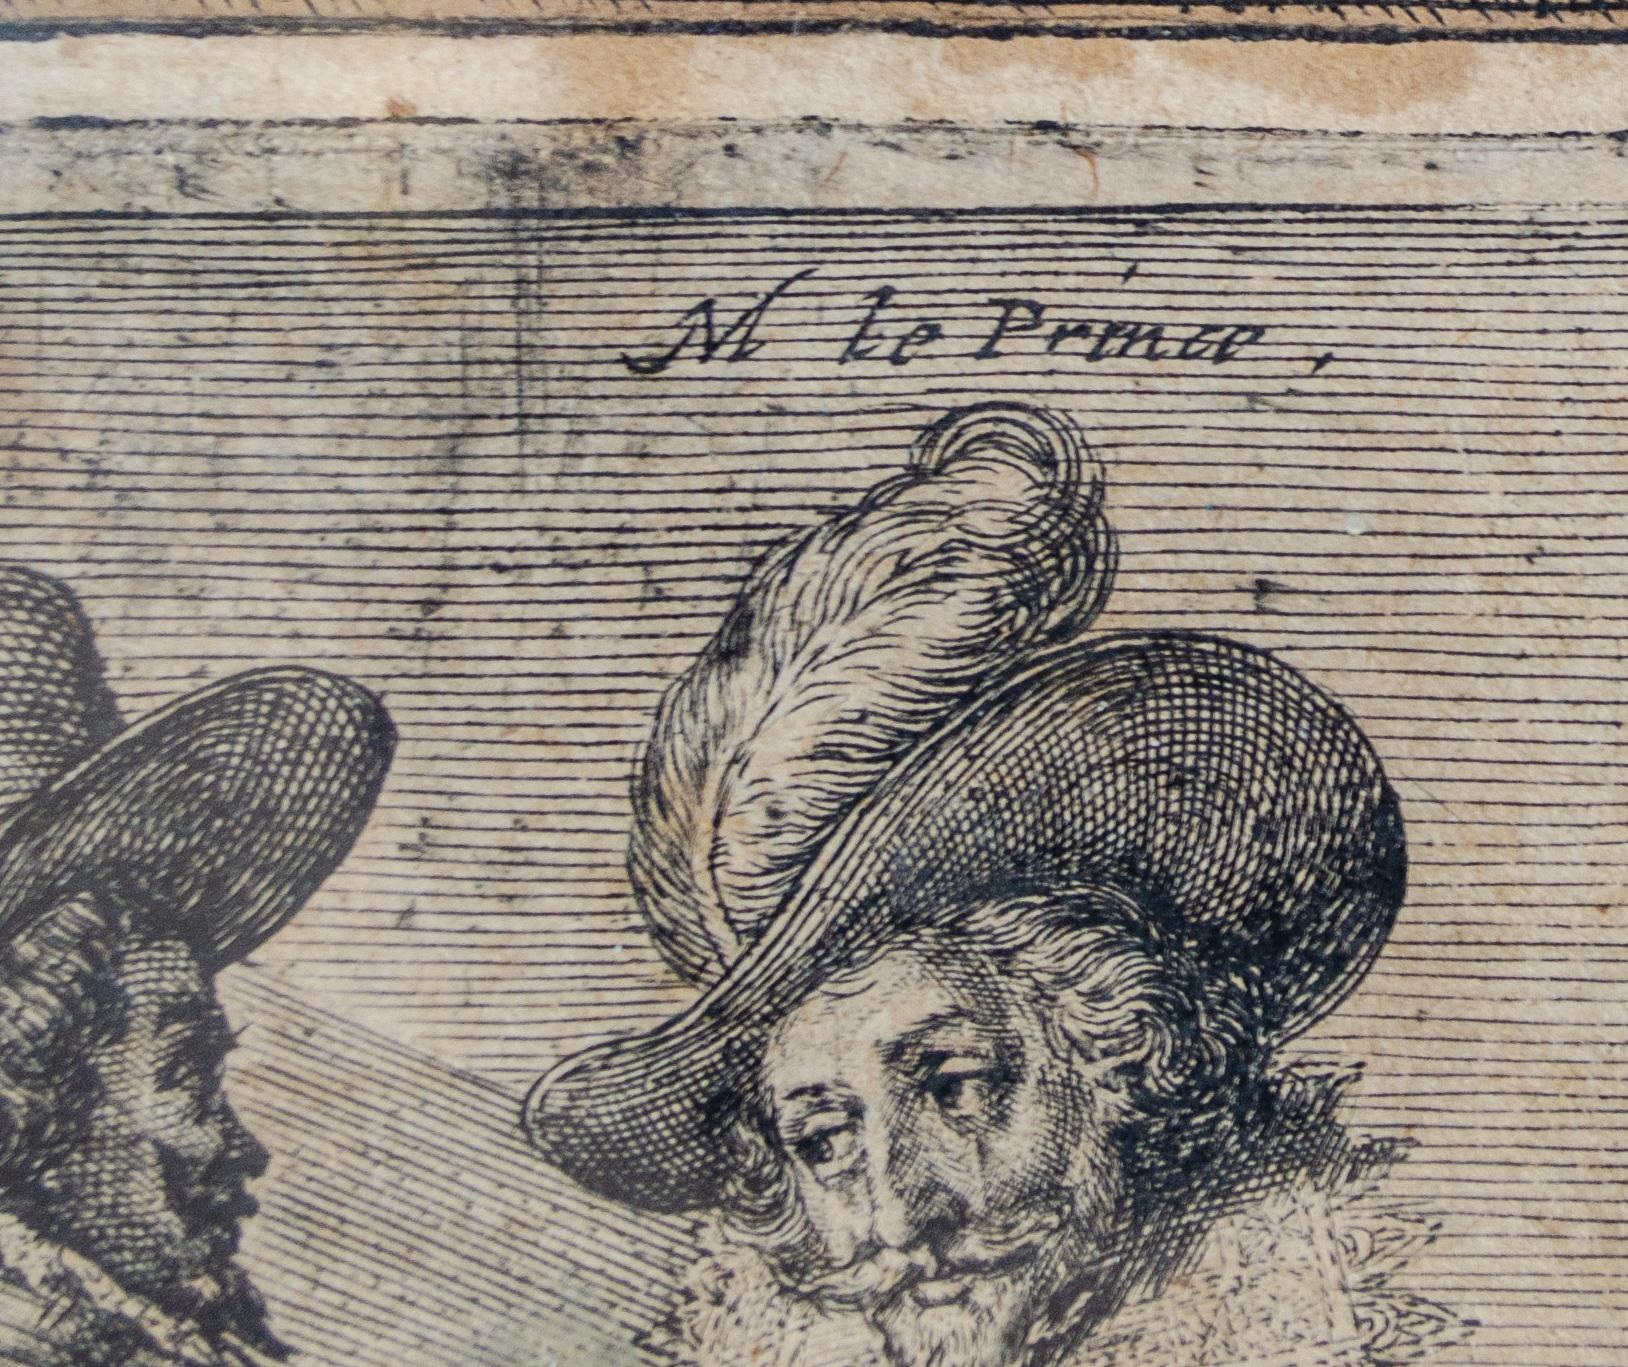 Crispin van de Passe The Younger (c. 1594-1670)
Sans titre (nobles français à cheval), c. 1620-1660
Gravure
Vue : 11 3/4 x 15 3/4 in.
Encadré : 18 3/4 x 22 5/8 in.

Inscrit dans la plaque : Le Prince

La tache blanche sur la photo provient d'un